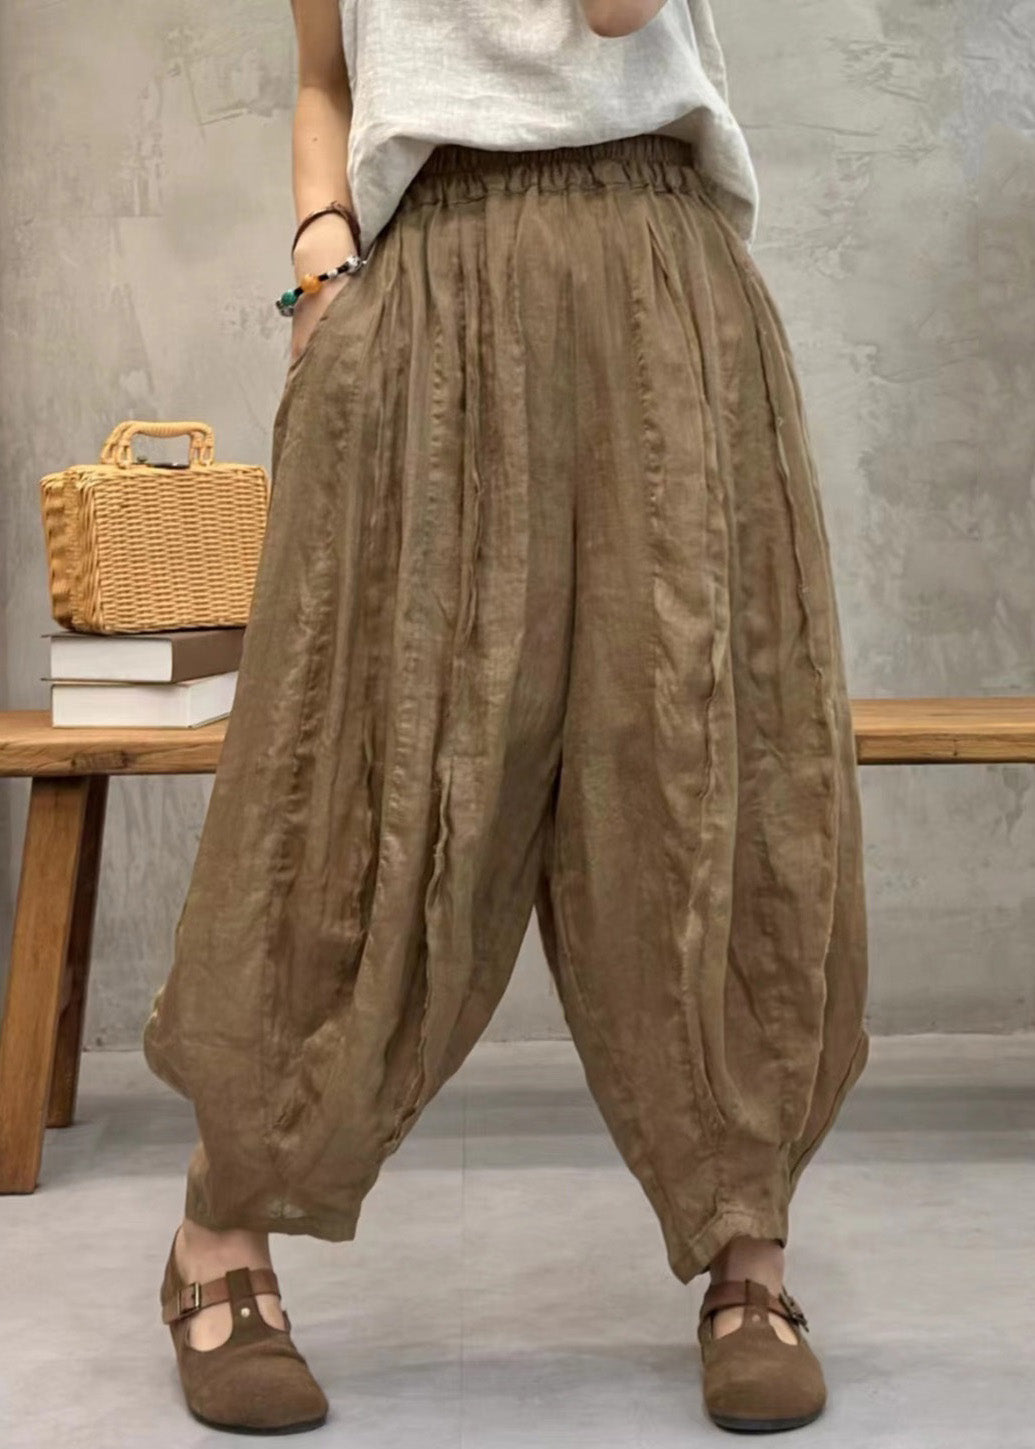 New Khaki Pockets High Waist Thin Linen Crop Pants Spring